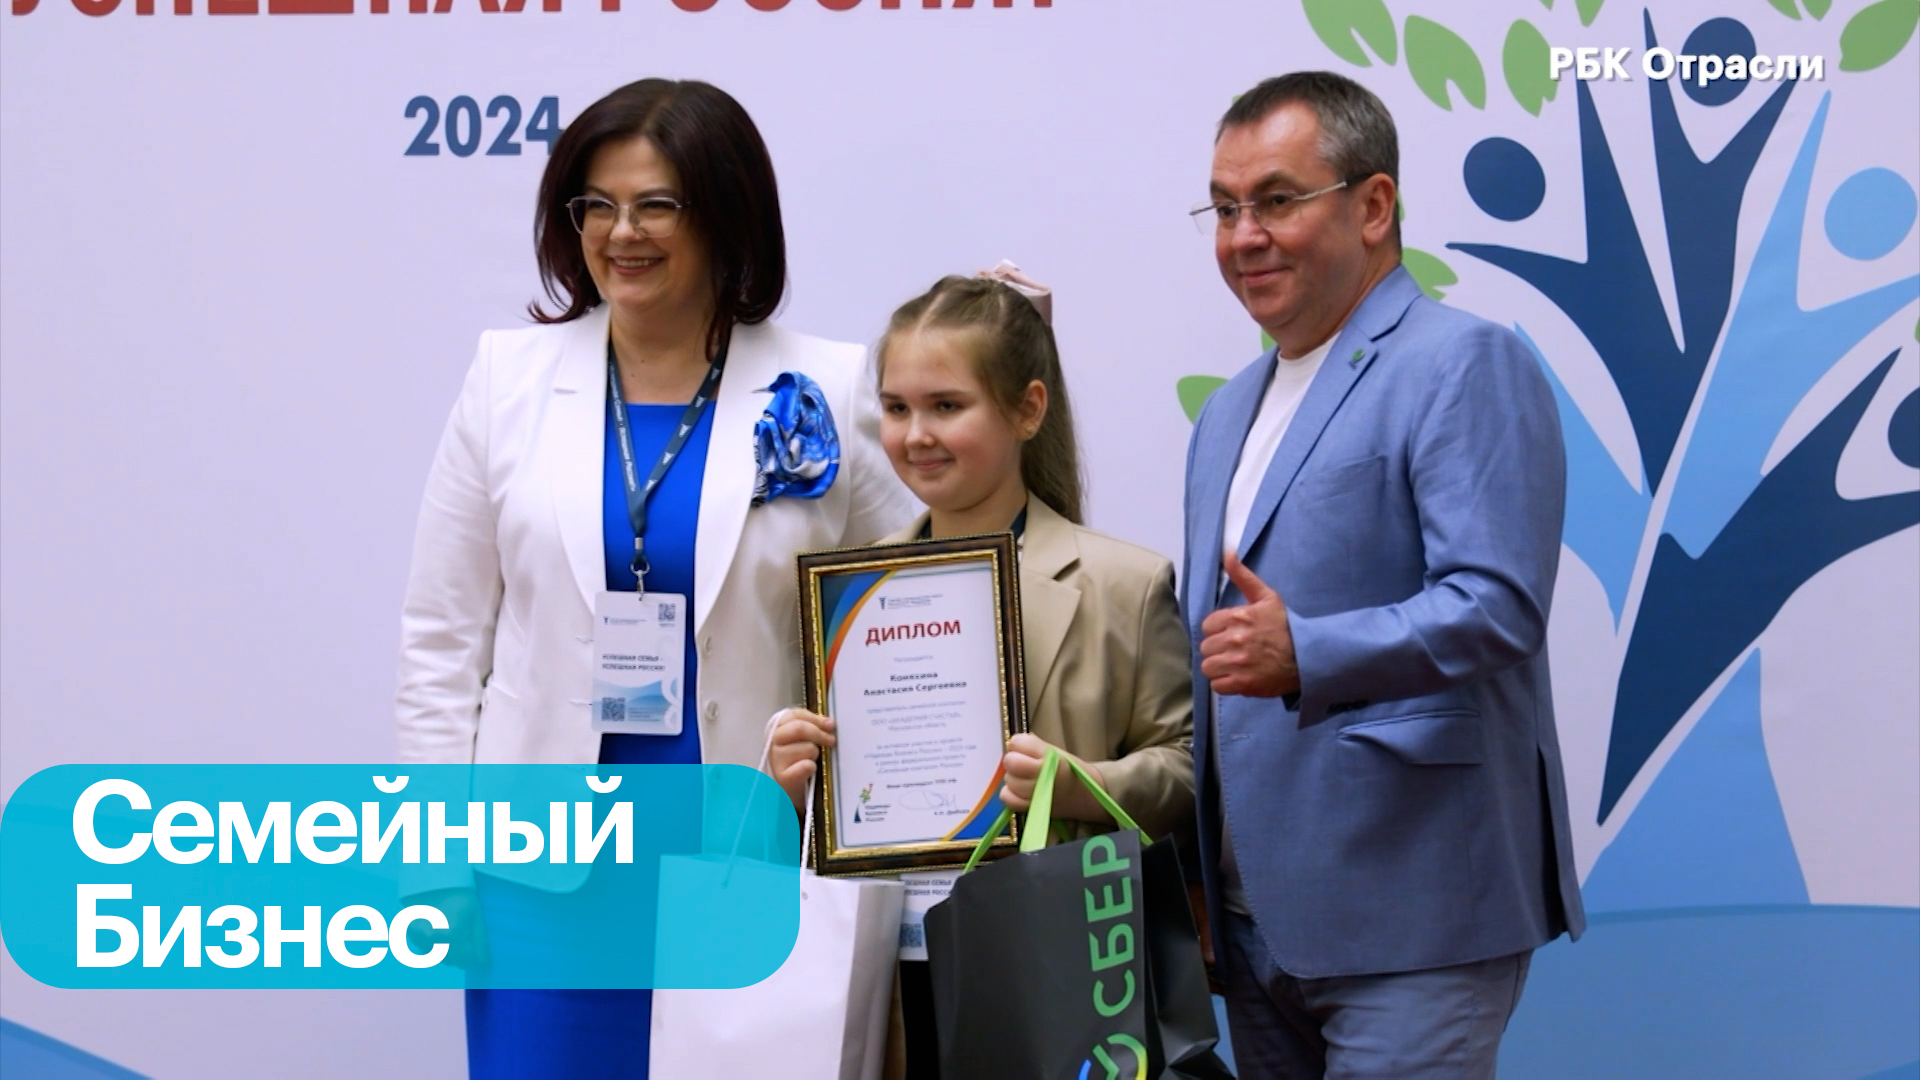 Развитие семейного бизнеса в России